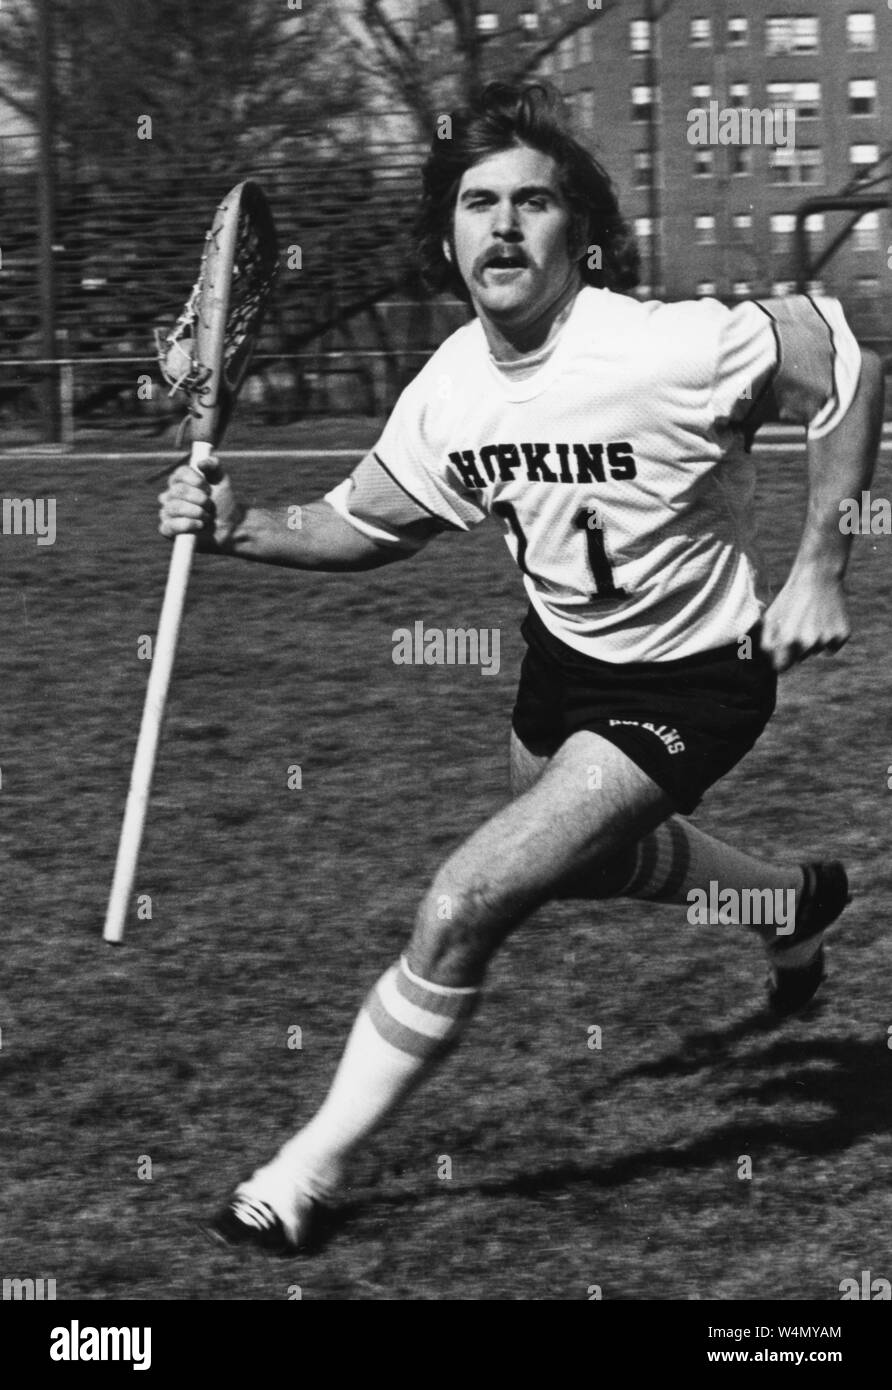 La Johns Hopkins crosse Bill Nolan, exécutant avec son bâton dans la main droite, portant des shorts et un Hopkins jersey, avec une expression du visage grave, 1970. À partir de la Collection de photographies historiques. () Banque D'Images